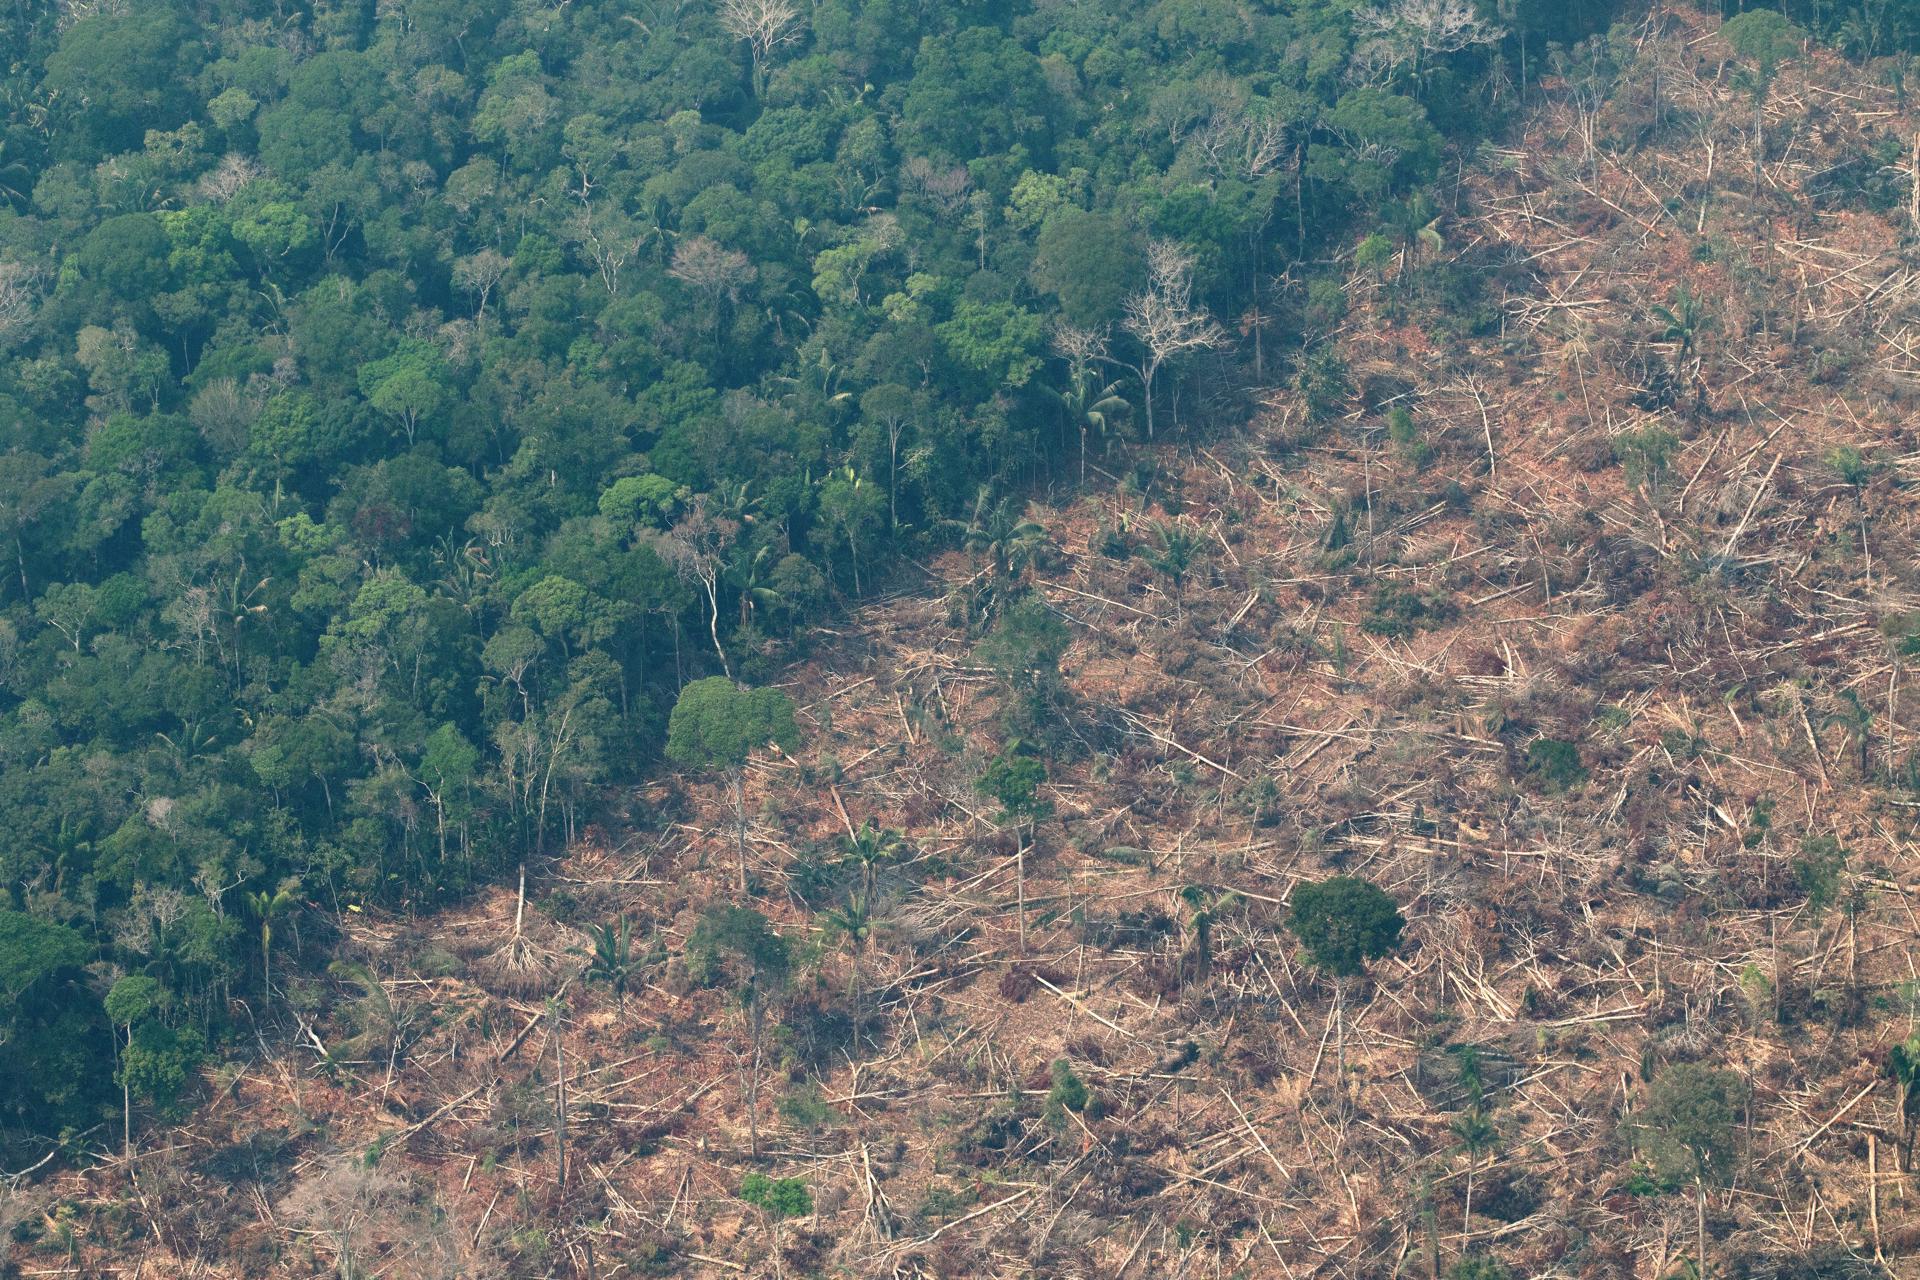 Vista aérea de áreas deforestadas de la selva amazónica de Porto Velho, Rondonia (Brasil), en una fotografía de archivo.EFE/ Joédson Alves